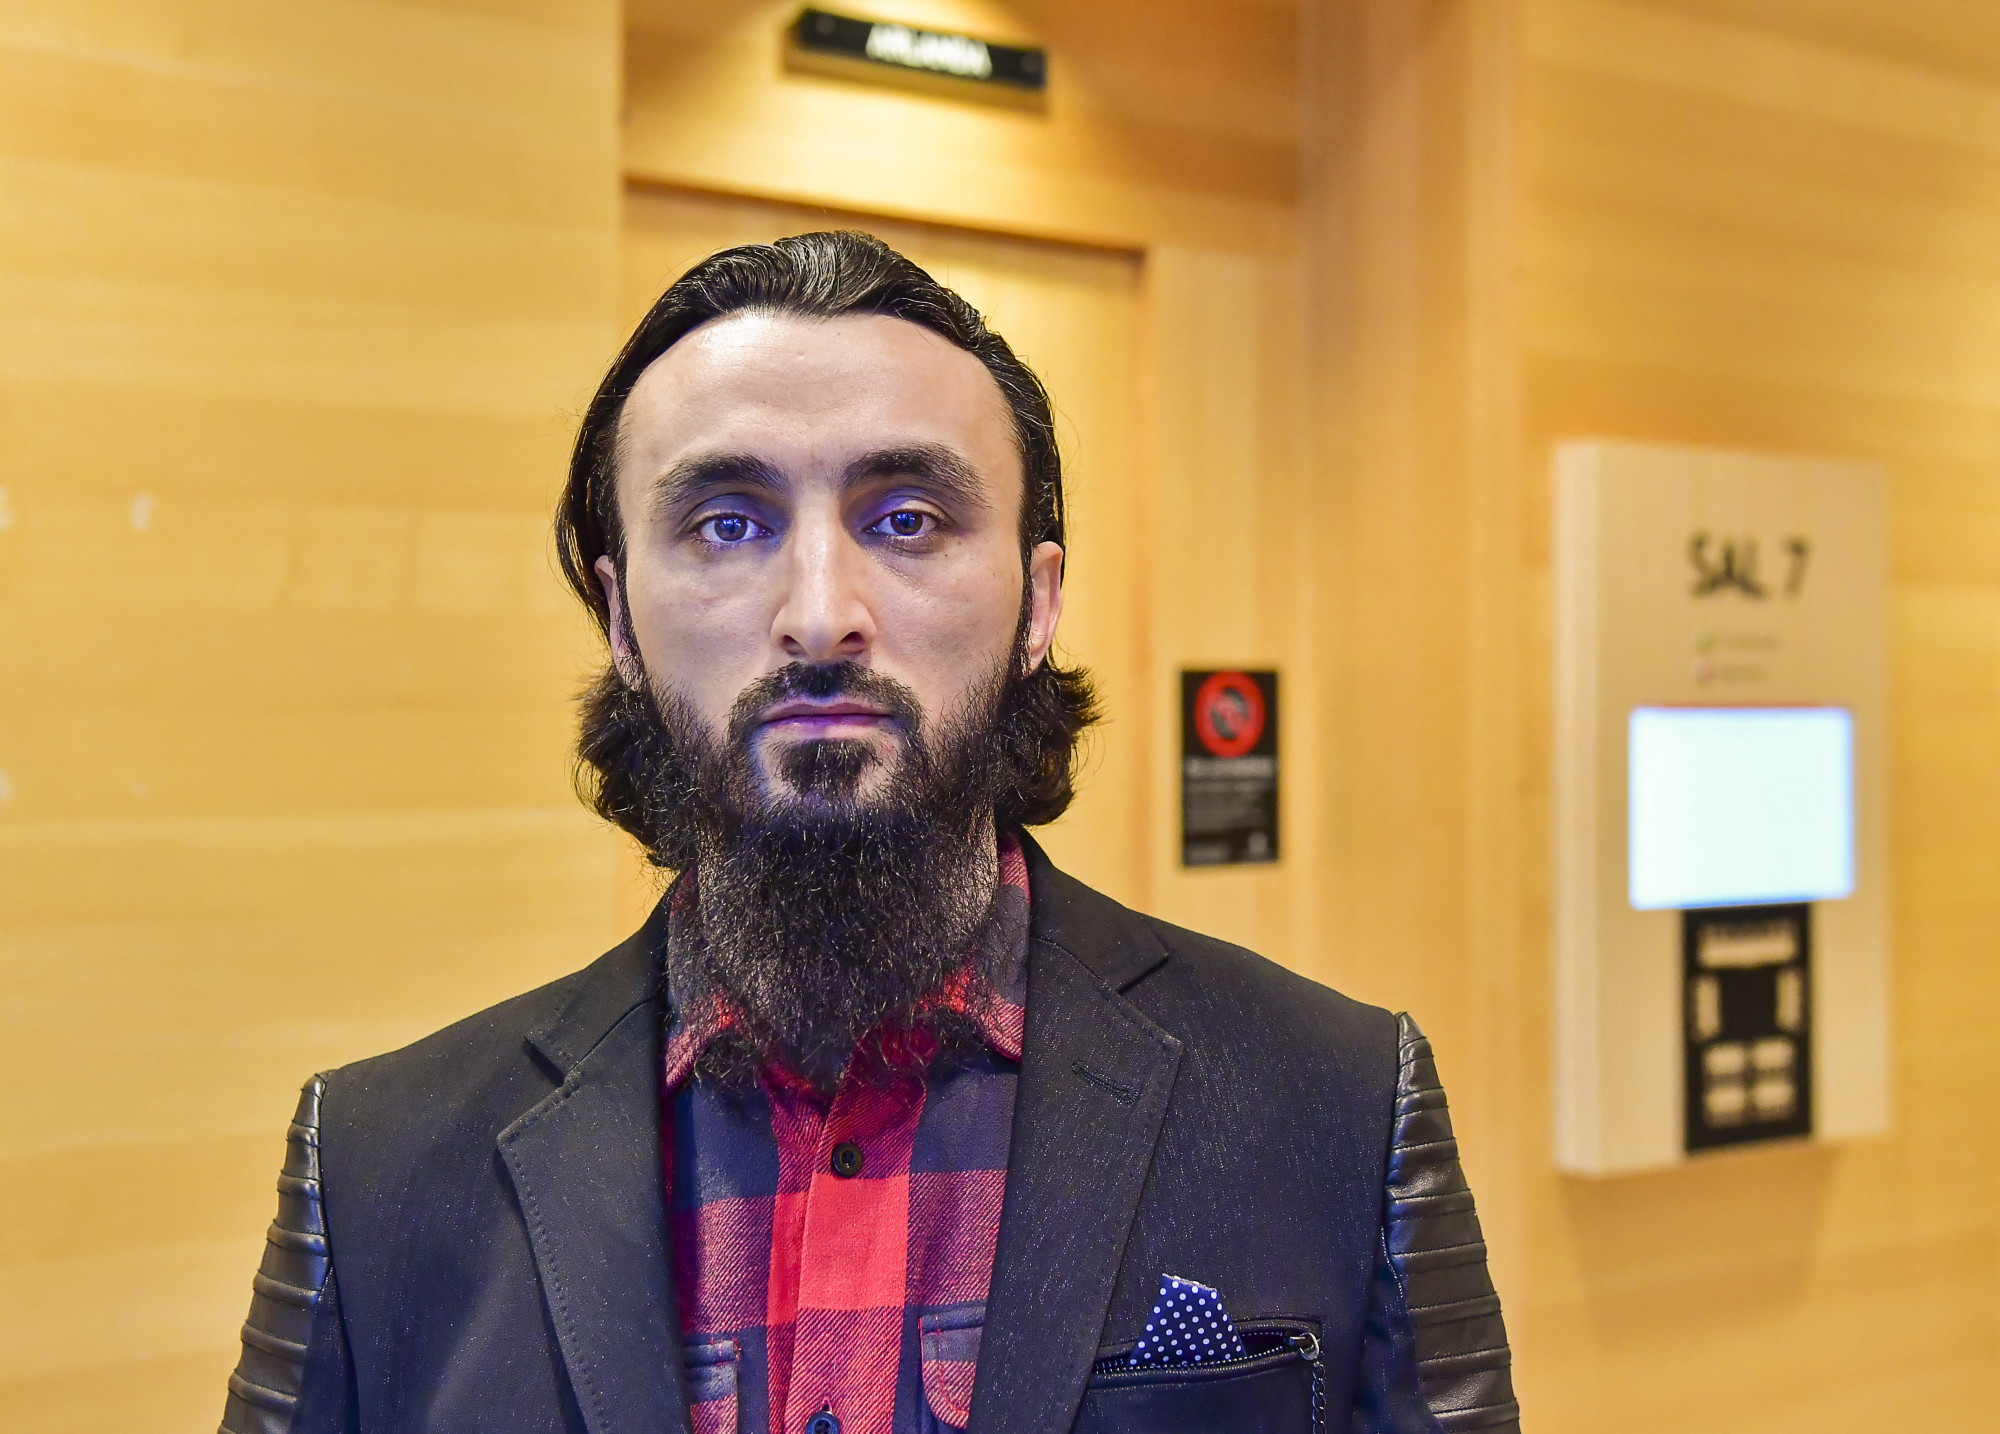 Megöltek egy csecsen bloggert Svédországban, miután rendszeresen kritizálta a csecsenföldi vezetőt